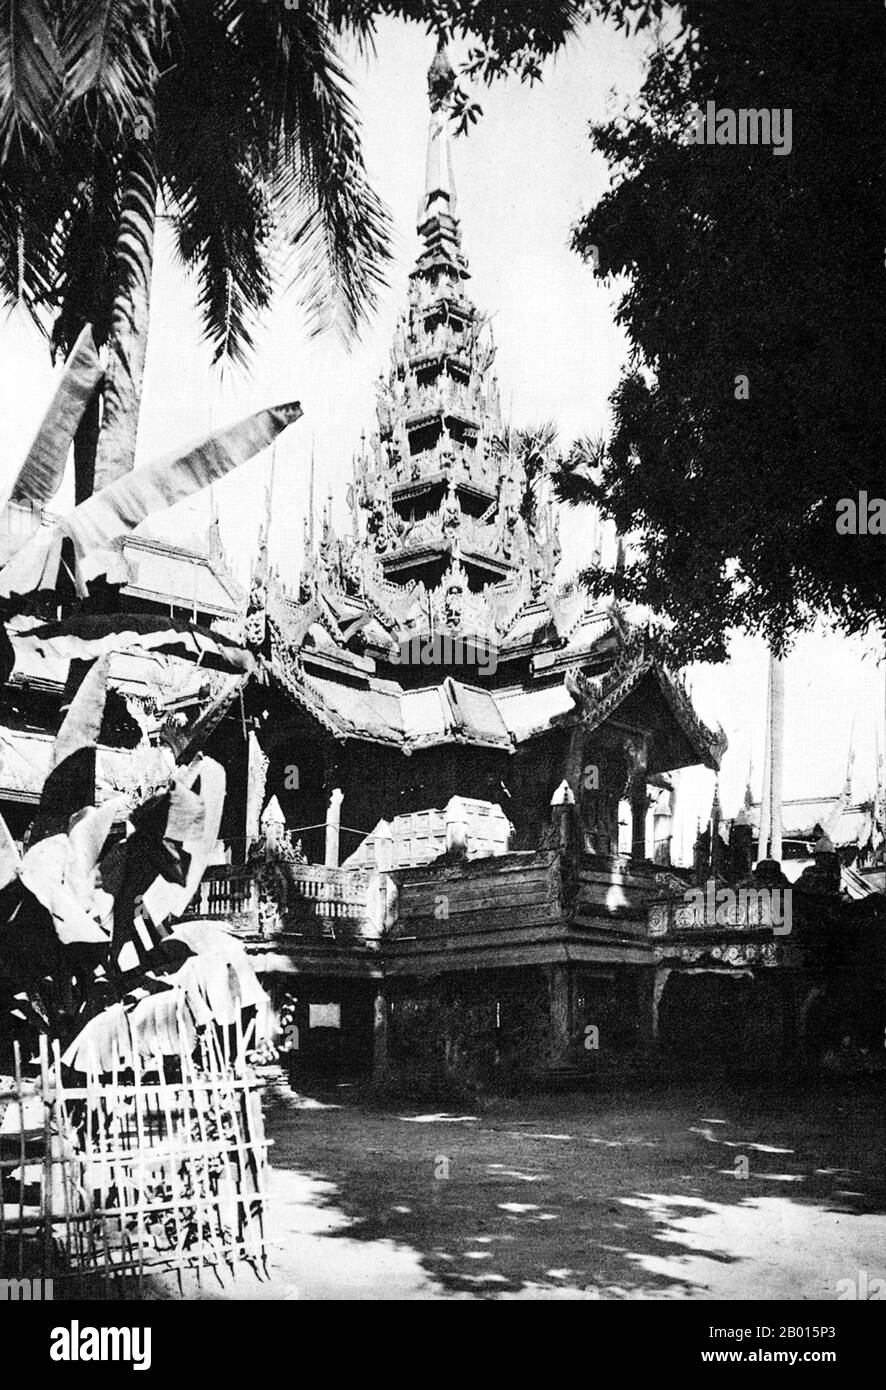 Burma/Myanmar: Ansicht eines alten Mandalay-Klosters aus Holz aus den 1920er Jahren. Mandalay ist die zweitgrößte Stadt und die letzte königliche Hauptstadt Burmas. Wie die meisten früheren (und heutigen) Hauptstädte Burmas wurde Mandalay auf den Wunsch des damaligen Herrschers gegründet. Am 13. Februar 1857 gründete König Mindon eine neue königliche Hauptstadt am Fuße des Mandalay Hill, angeblich um eine Prophezeiung über die Gründung einer Metropole des Buddhismus an genau diesem Ort anlässlich des 2.4.Jubiläums des Buddhismus zu erfüllen. Stockfoto